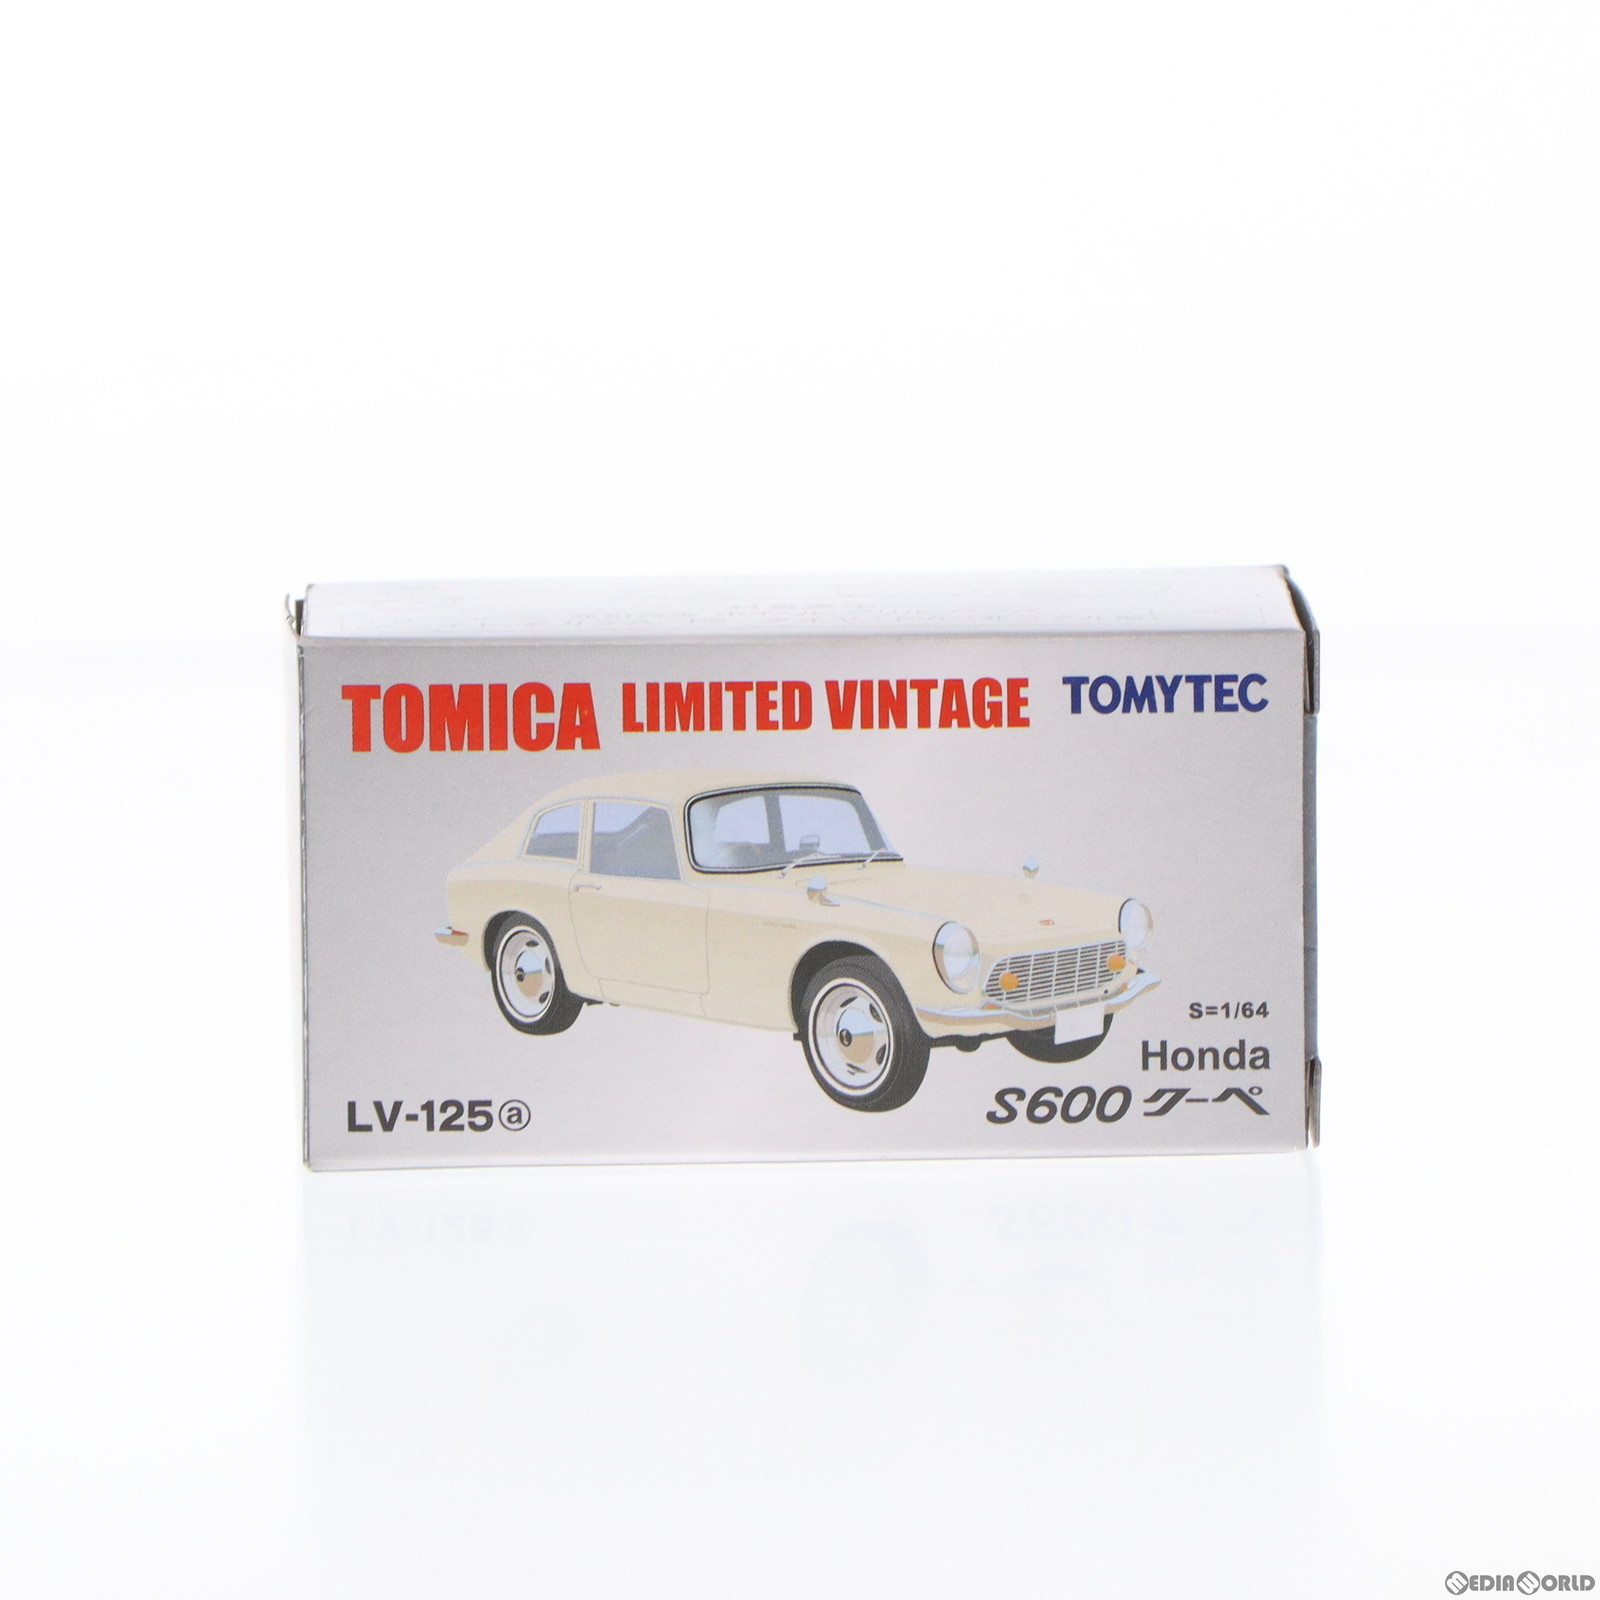 【中古即納】[MDL]トミカ リミテッドヴィンテージ 1/64 TLV-125a Honda S600クーペ ホワイト 完成品 ミニカー(242895) TOMYTEC(トミーテ